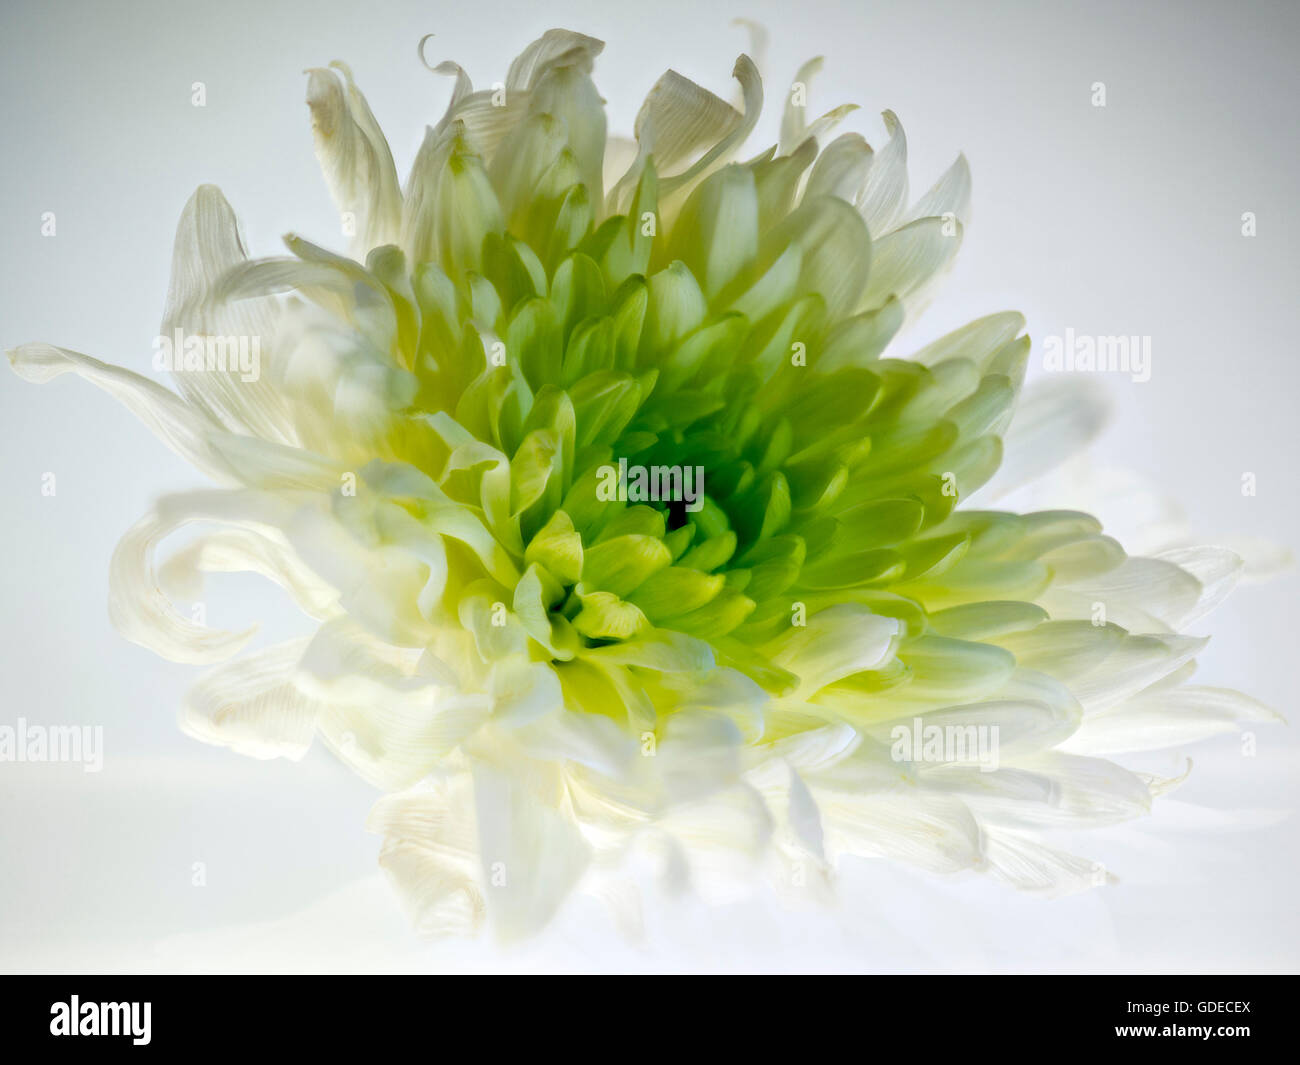 Chrysanthème. Ce livre blanc/vert fleur a été isolé et éclairé pour montrer sa beauté délicate et structure des pétales. Banque D'Images